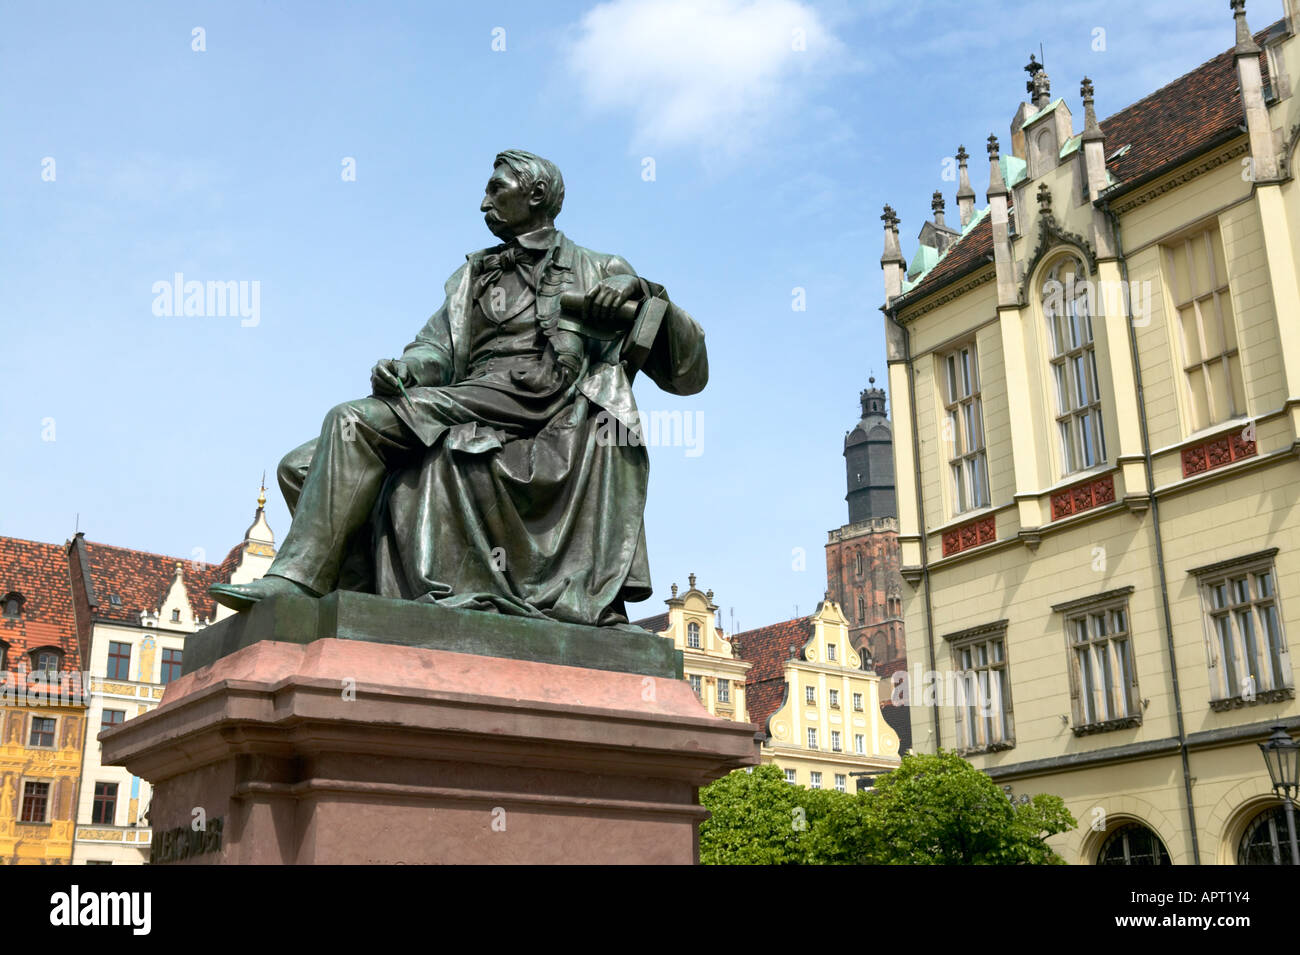 Statue de Wroclaw Dolnoslaskie Pologne Aleksander HR Fredo Comic Writer 1793 1876 Vieille ville de la place du marché Rynek Banque D'Images